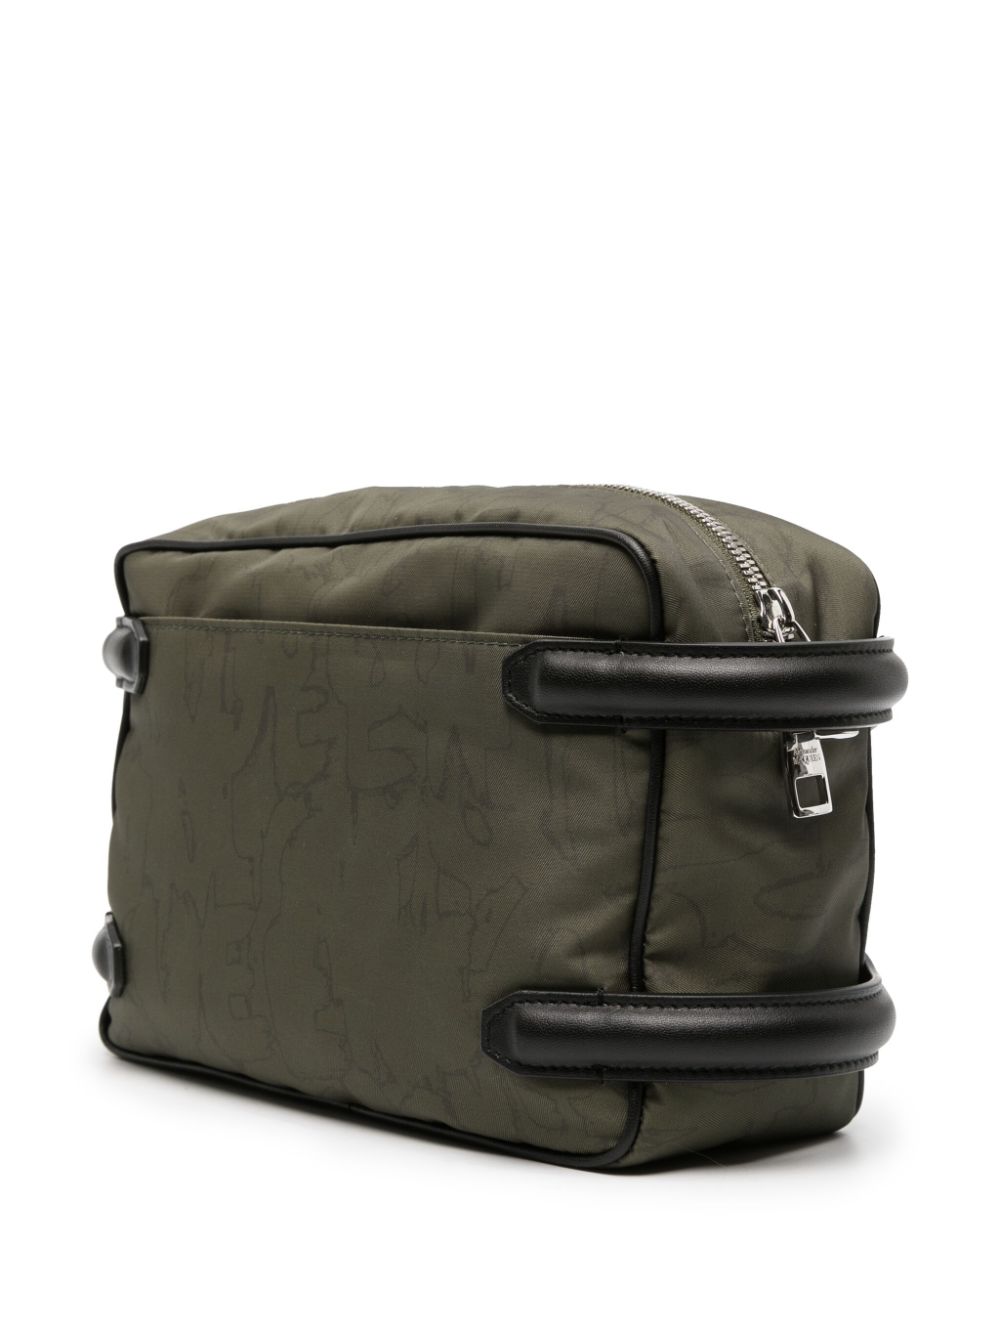 Panelled-leather gabardine bag<BR/><BR/><BR/>